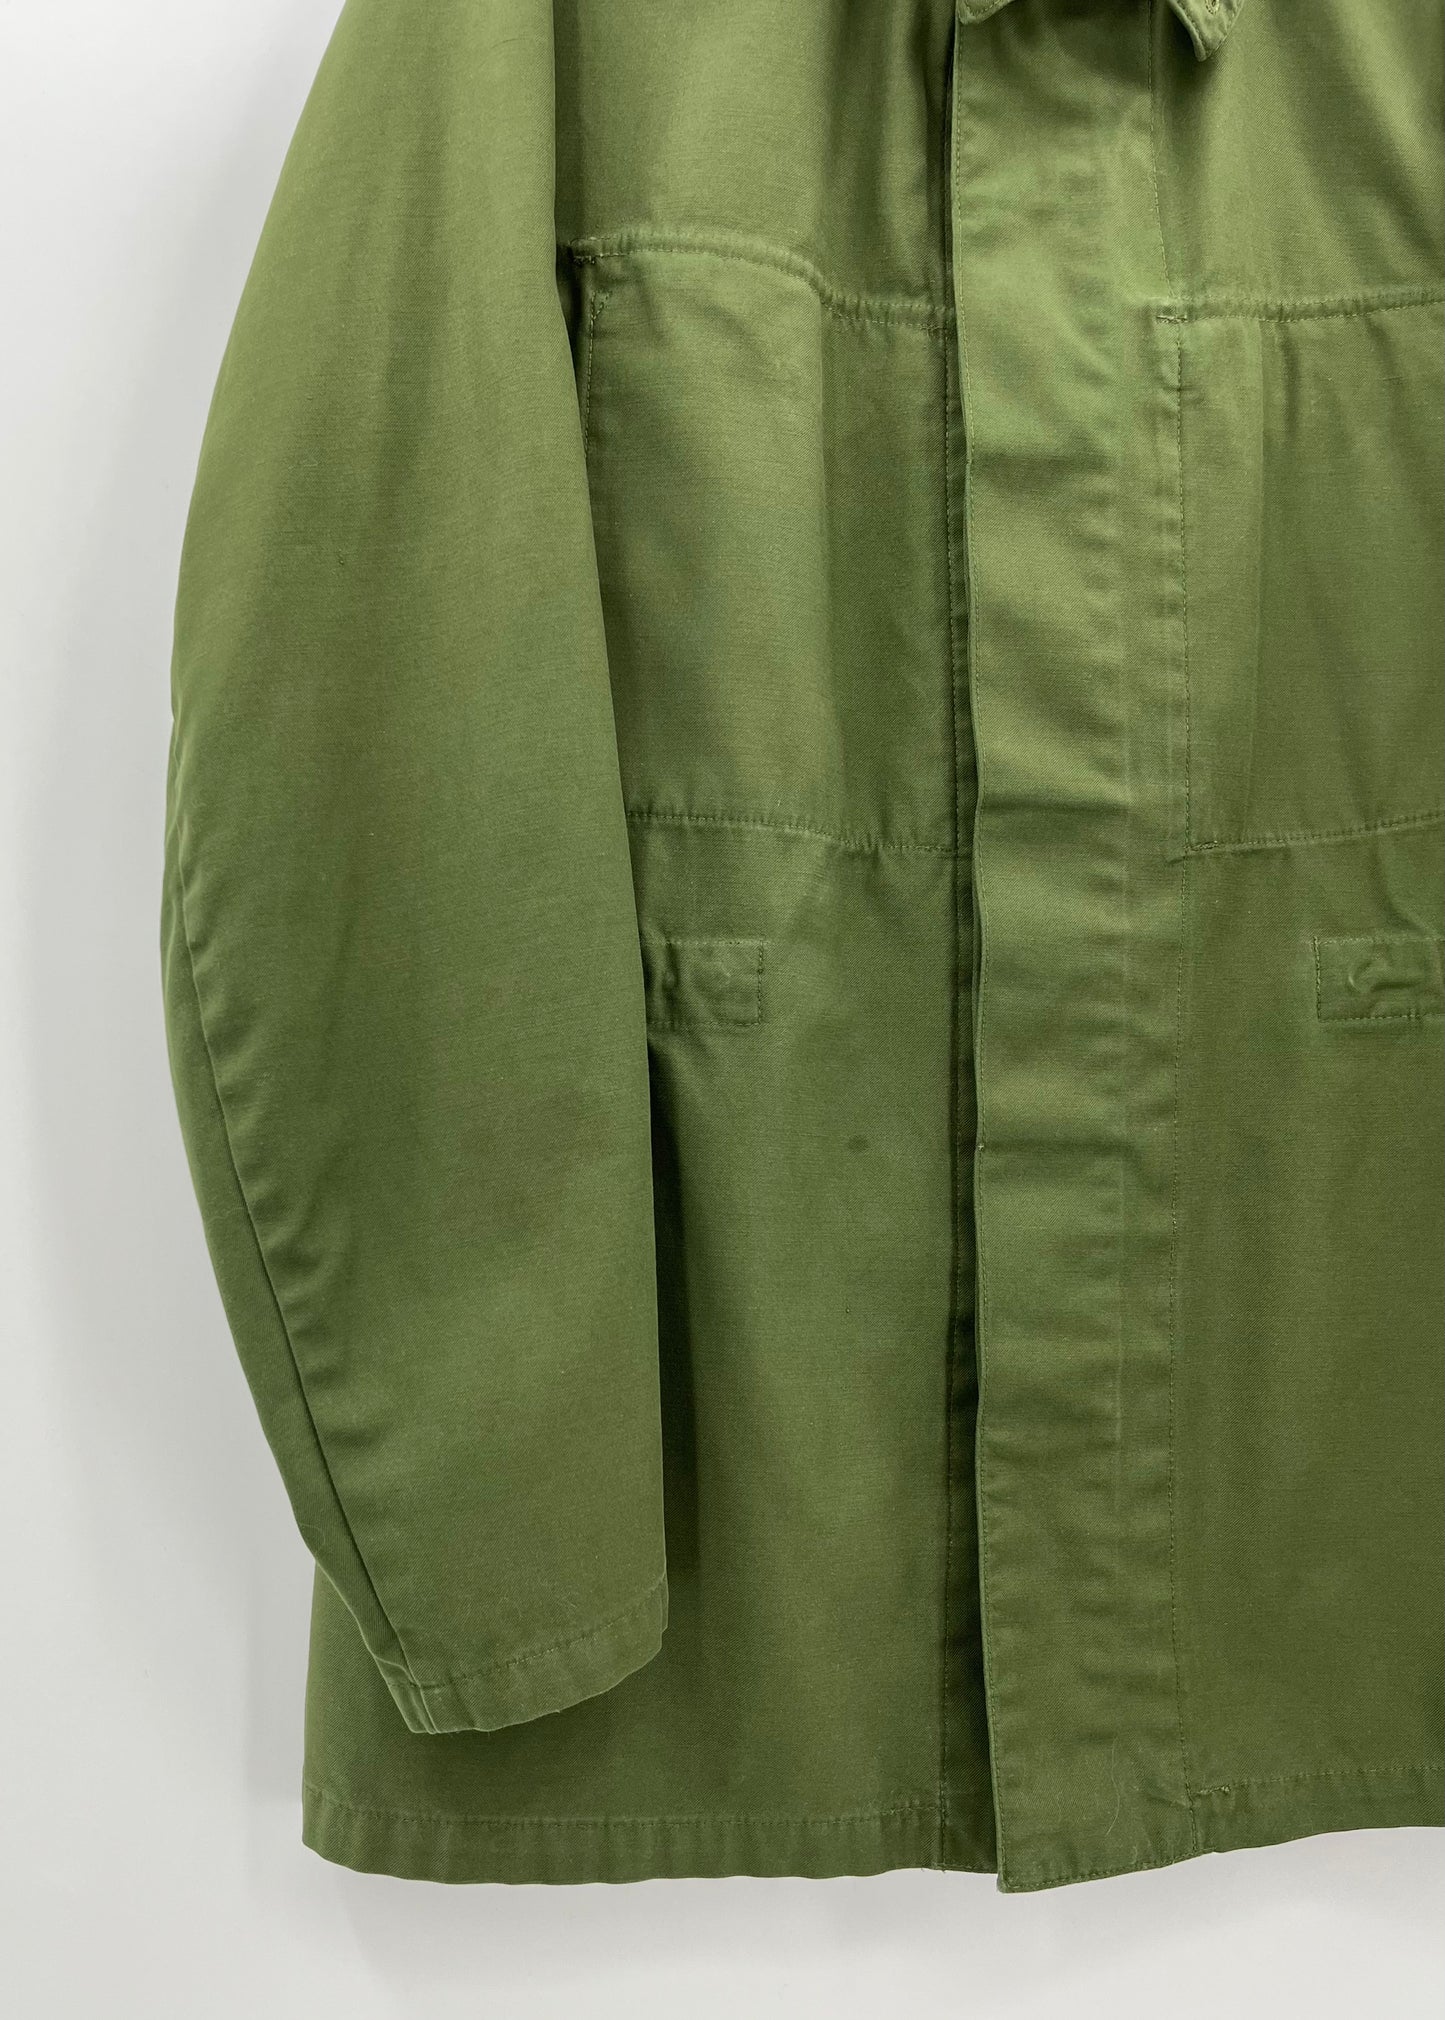 Metsänvihreä miesten takki, 80-luku, koko M-L